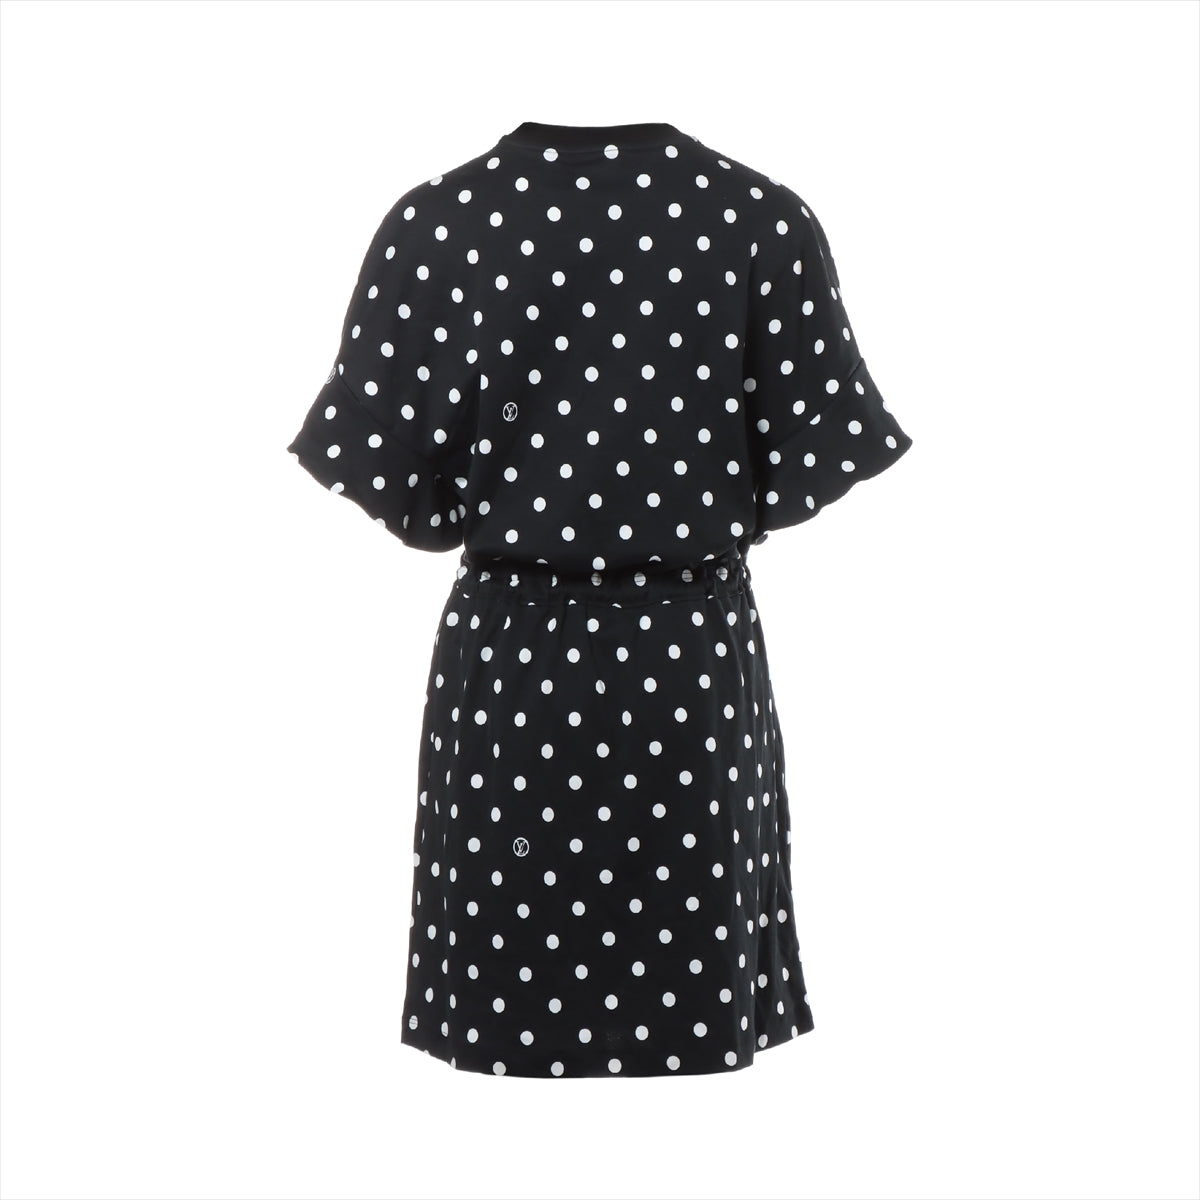 Louis Vuitton 22SS Cotton Dress M Ladies' Black × White  polka dot dress RW221B